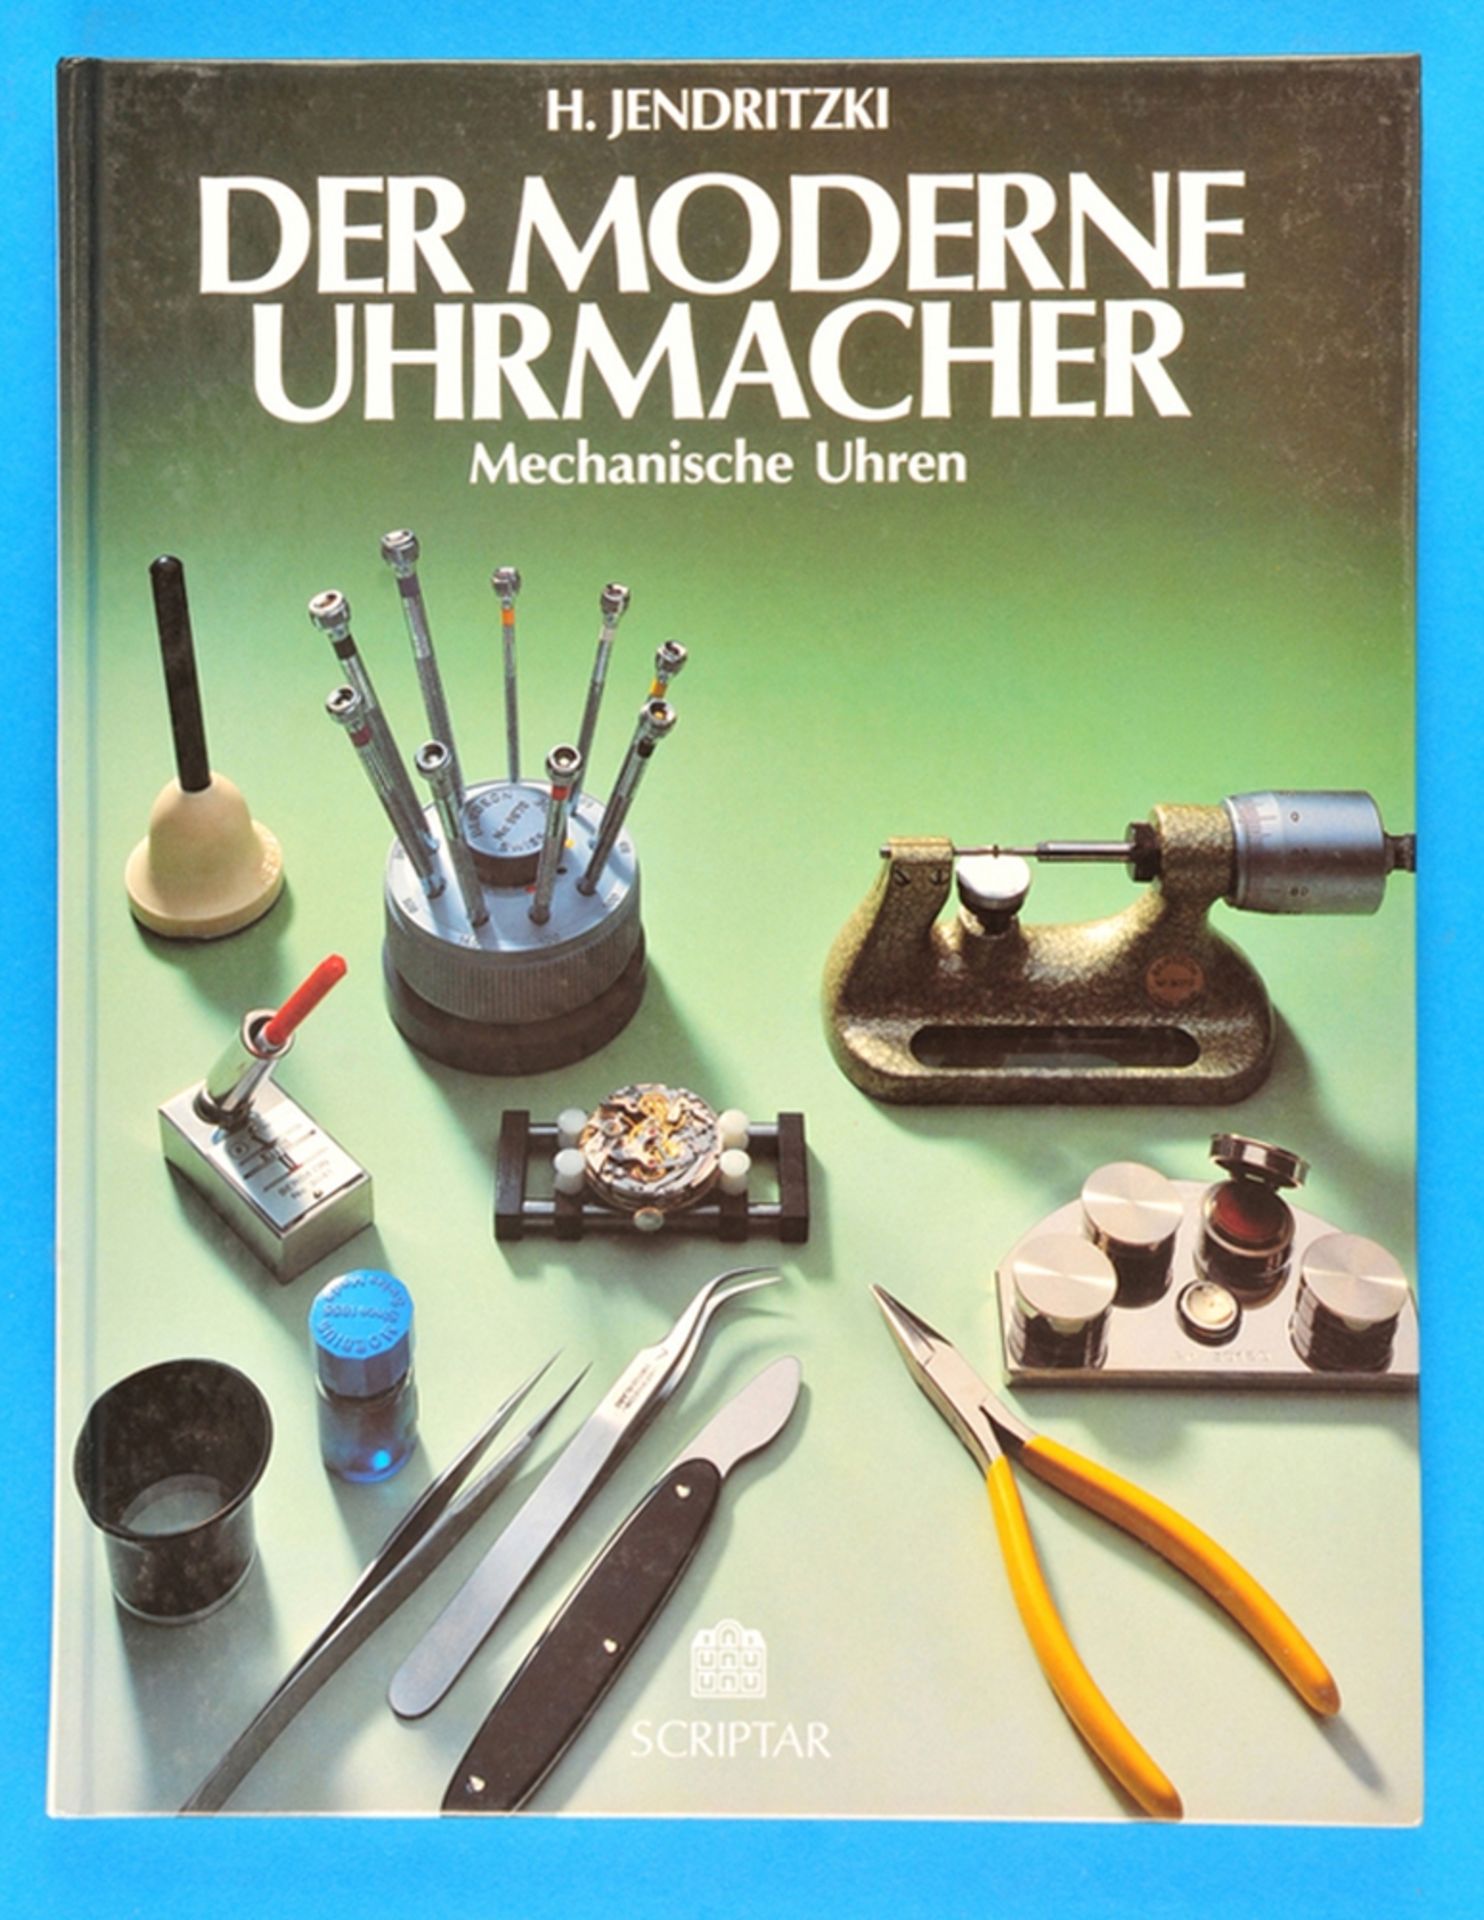 H. Jendritzki, Der moderne Uhrmacher, Mechanische Uhren, 1988